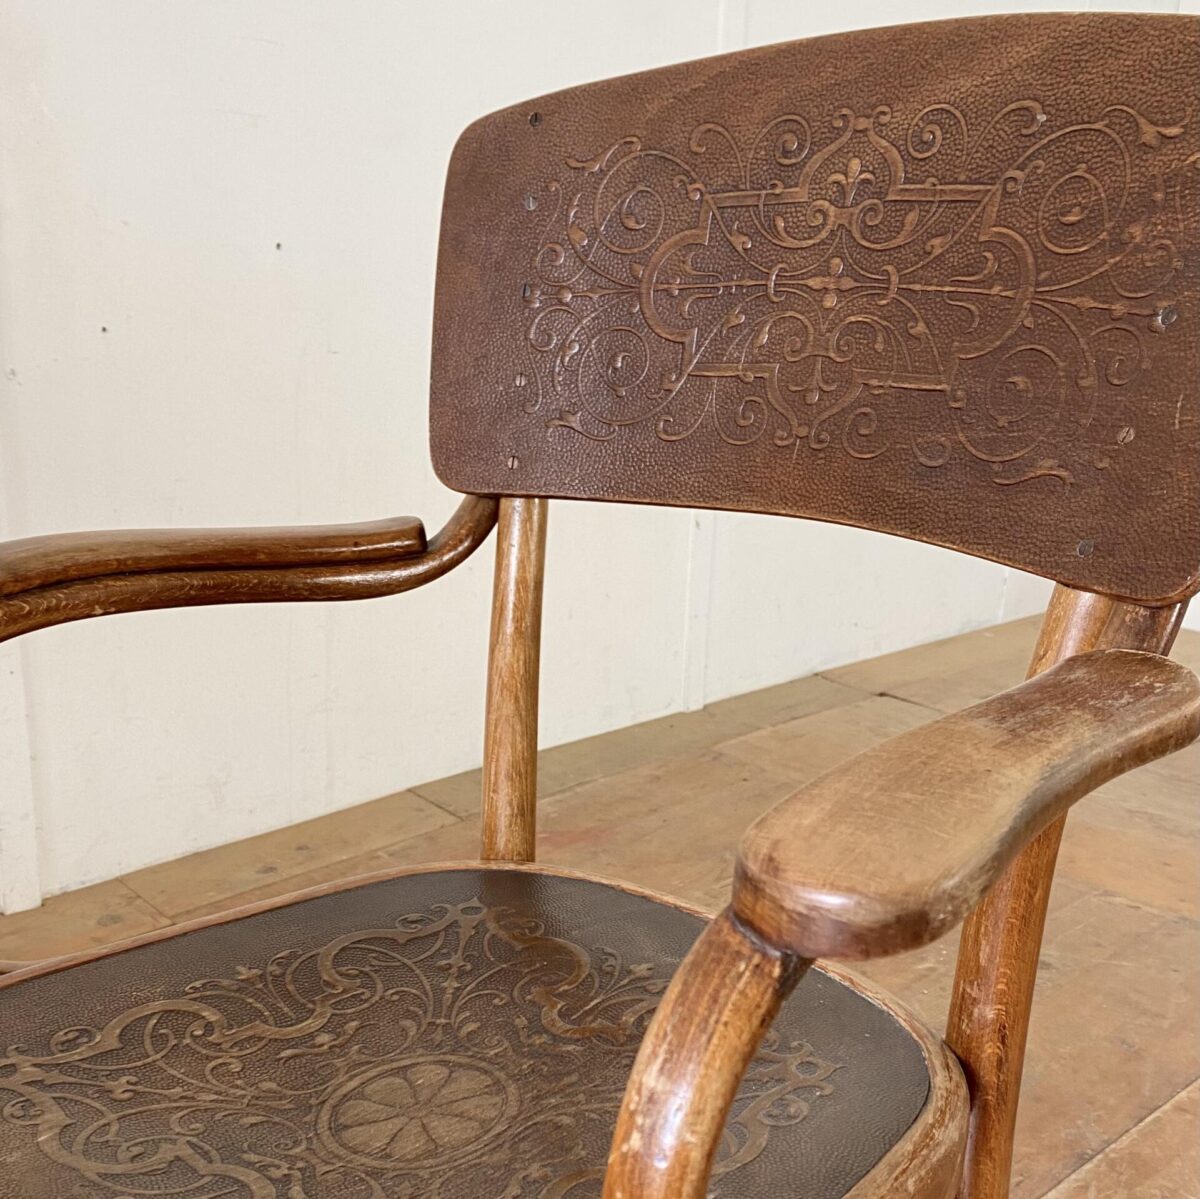 Deuxieme.shop Bugholzstühle Thonet Armlehnstühle Model 57 Jahrgang 1895. Preis pro Stuhl. Die Stühle sind in stabilem Zustand, die Lack Oberflächen sind teilweise etwas abgewetzt, Alterspatina in verschiedenen Brauntönen. 